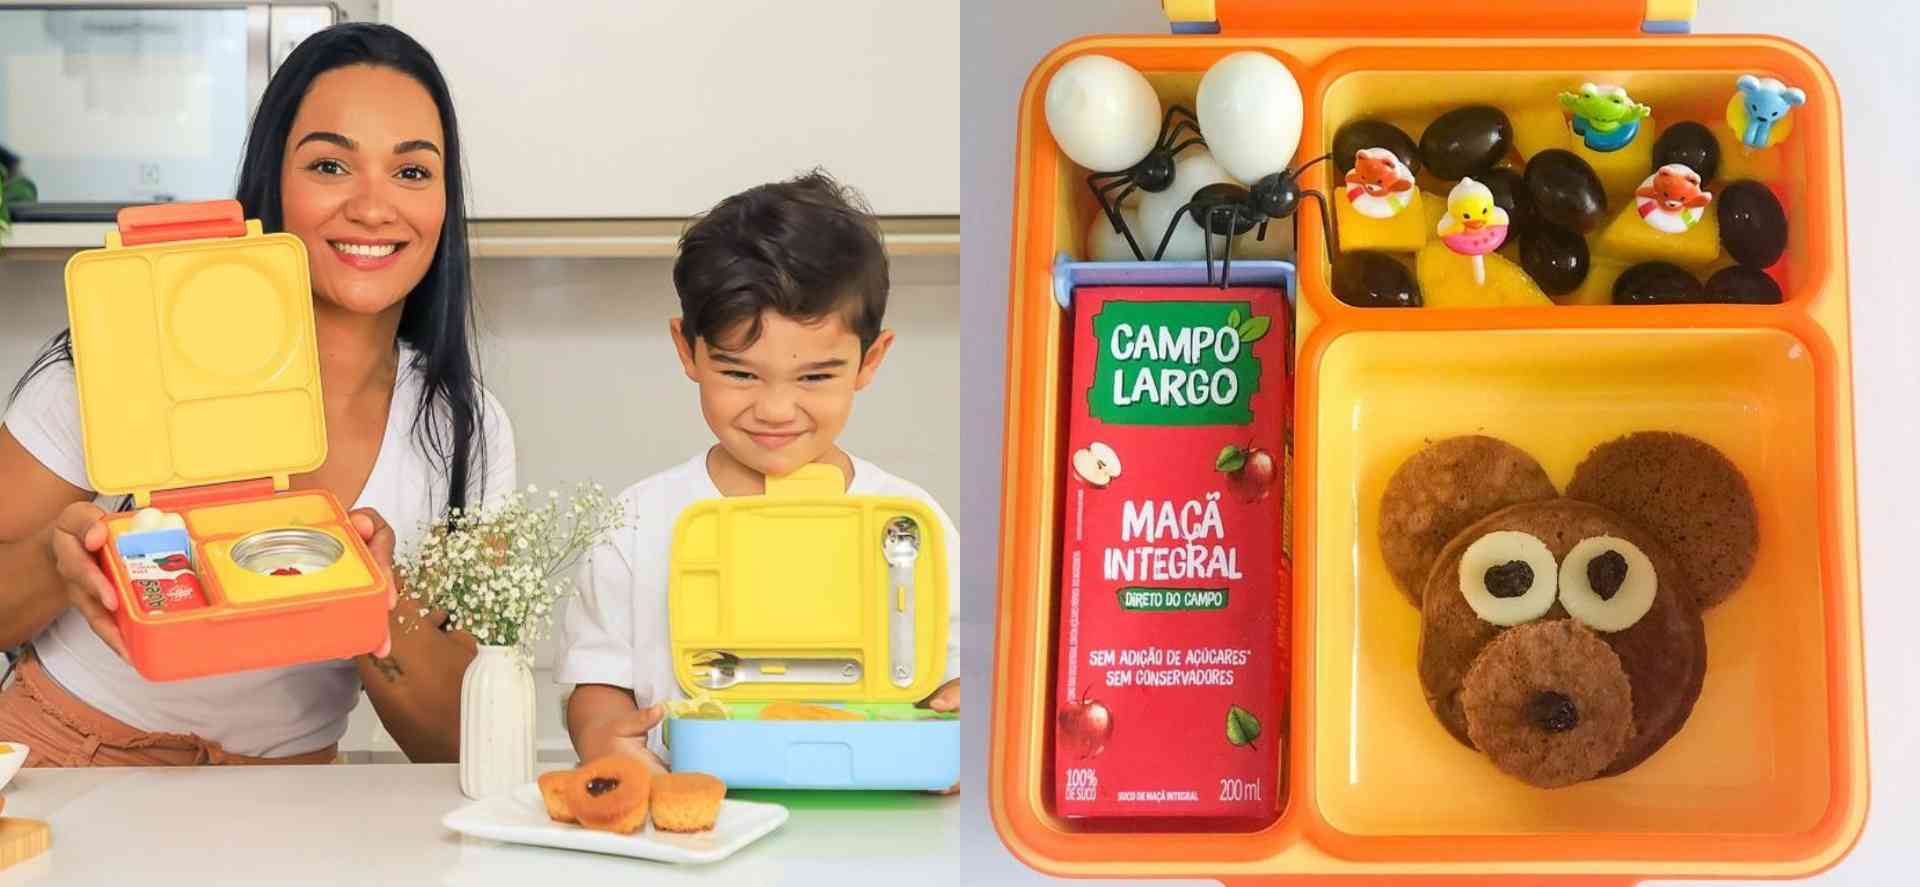 Lancheiras divertidas: uma maneira saudável e criativa de incentivar a alimentação infantil. - Foto: Arquivo pessoal